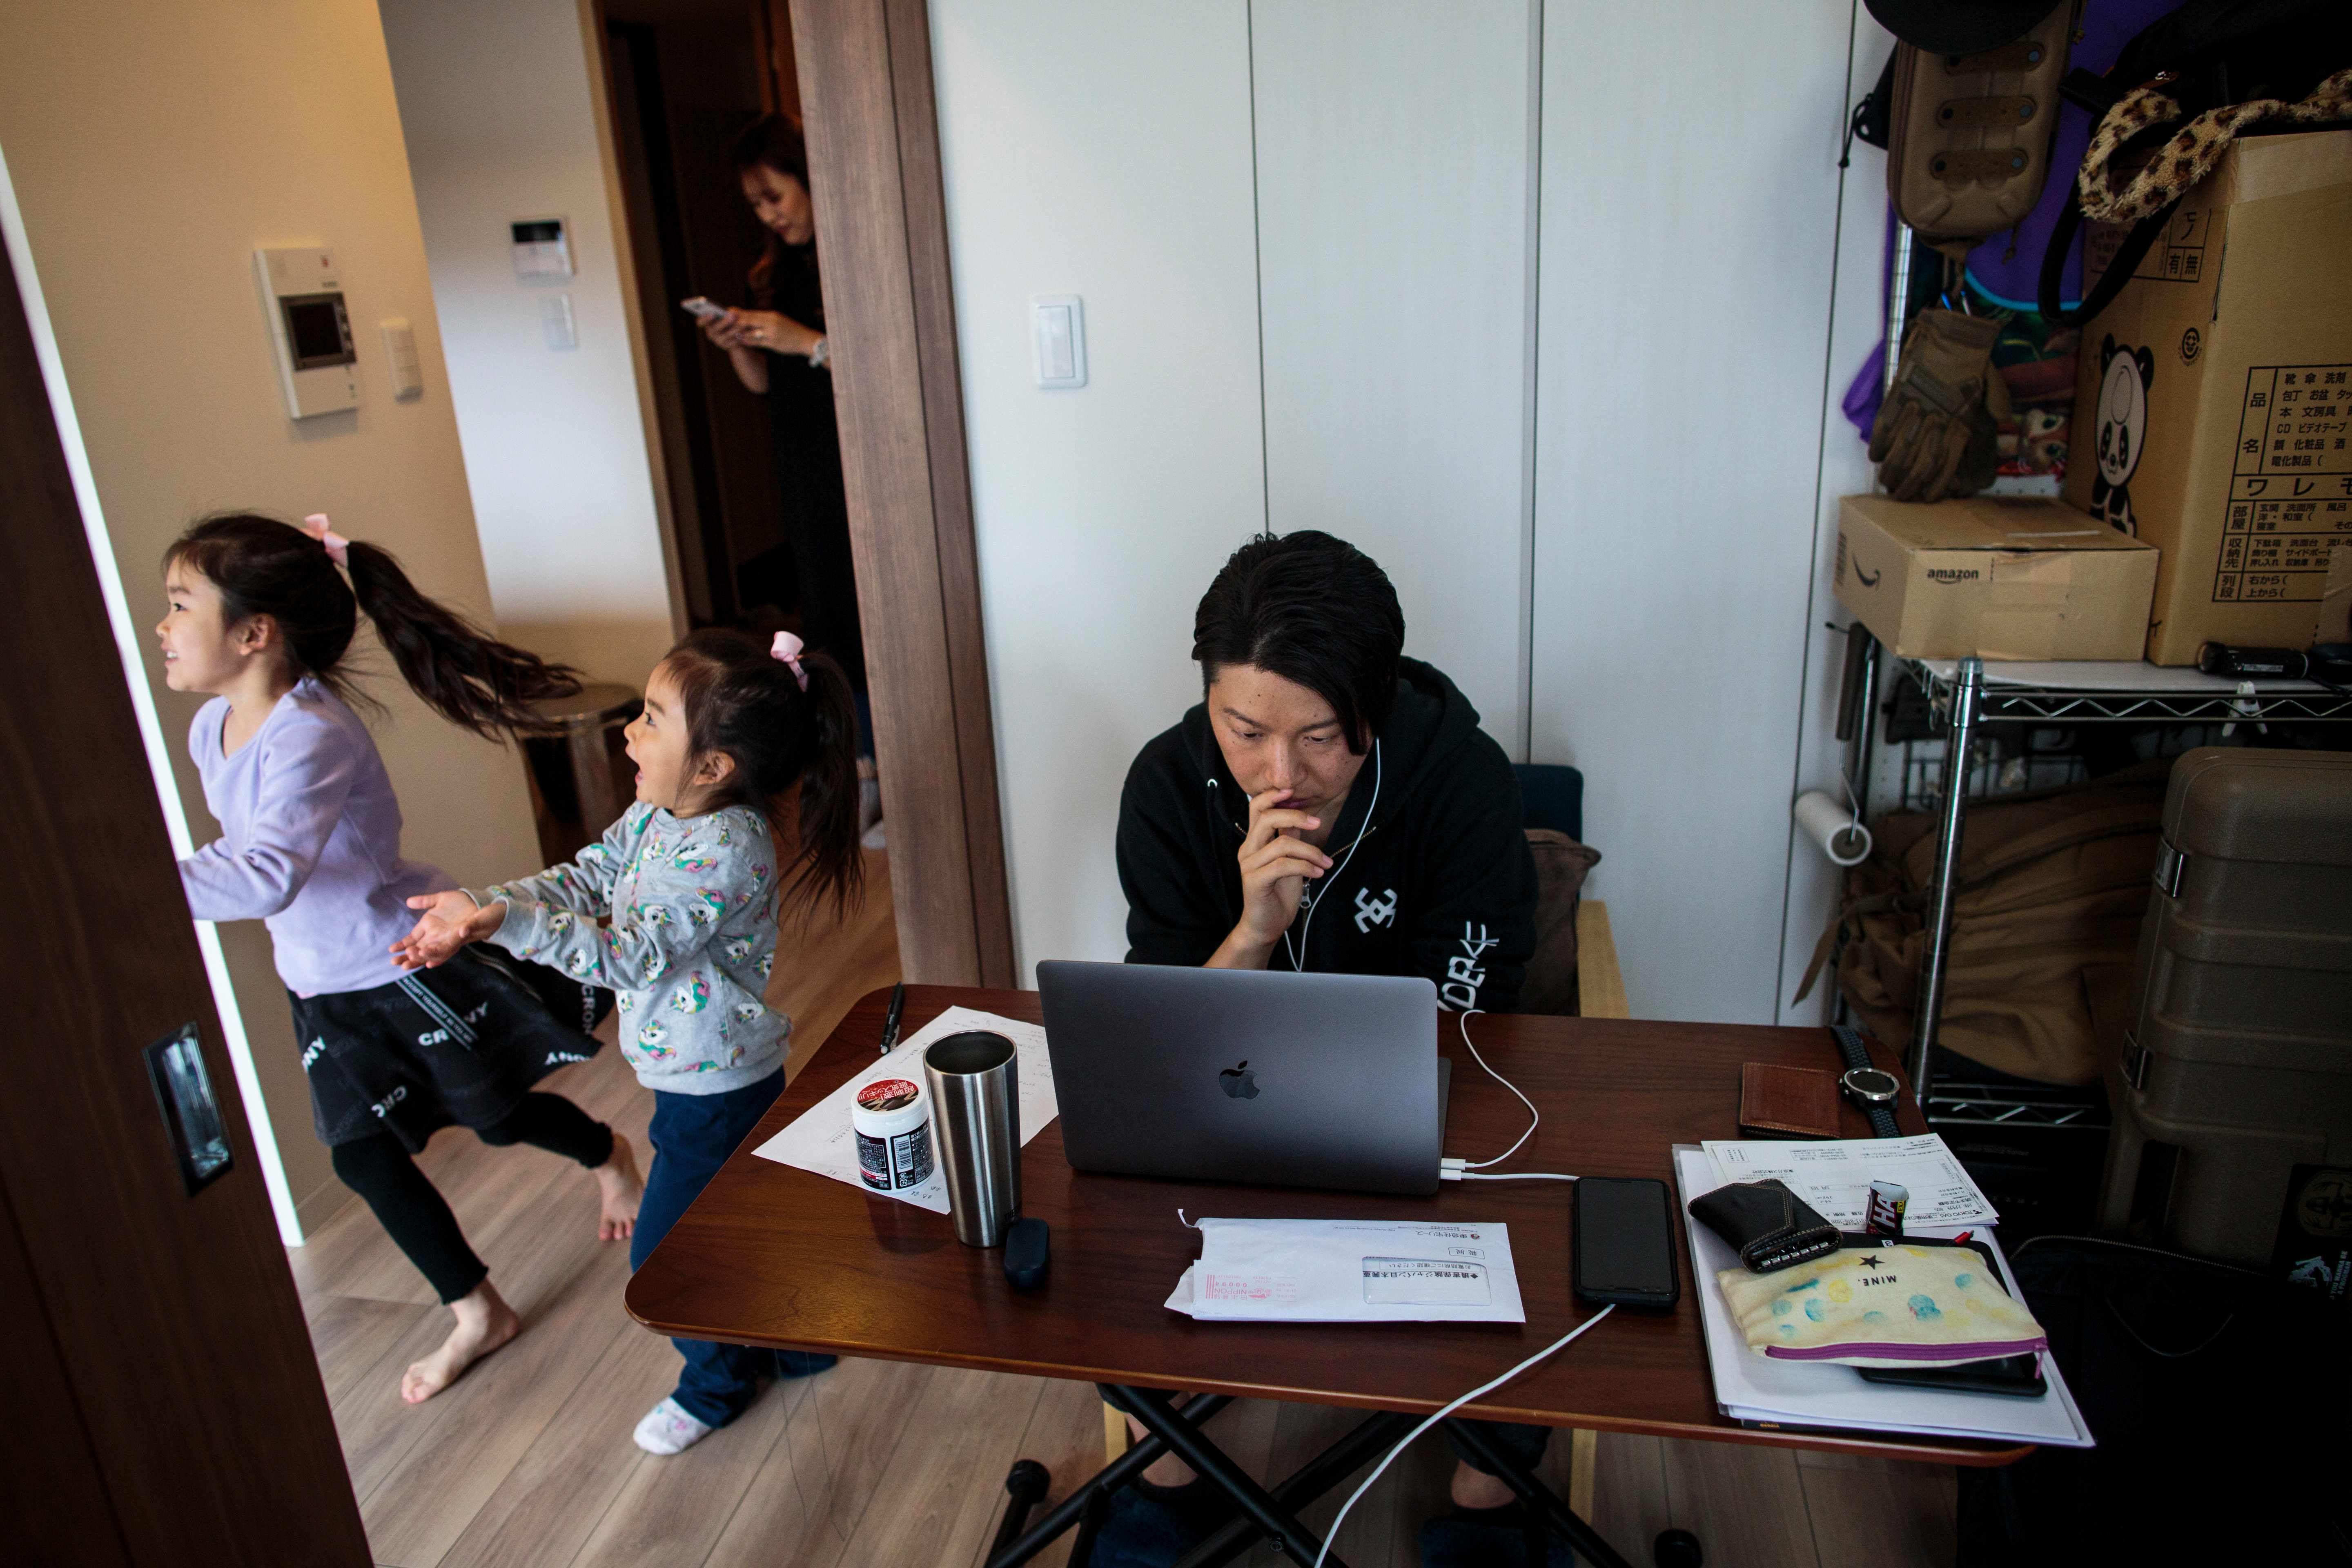 Teletrabajo con niños.
Mientras sus hijas corren por la habitación, el japonés Yuki Sato, empleado de una start-up, trabaja en casa frente a la pantalla y con auriculares.